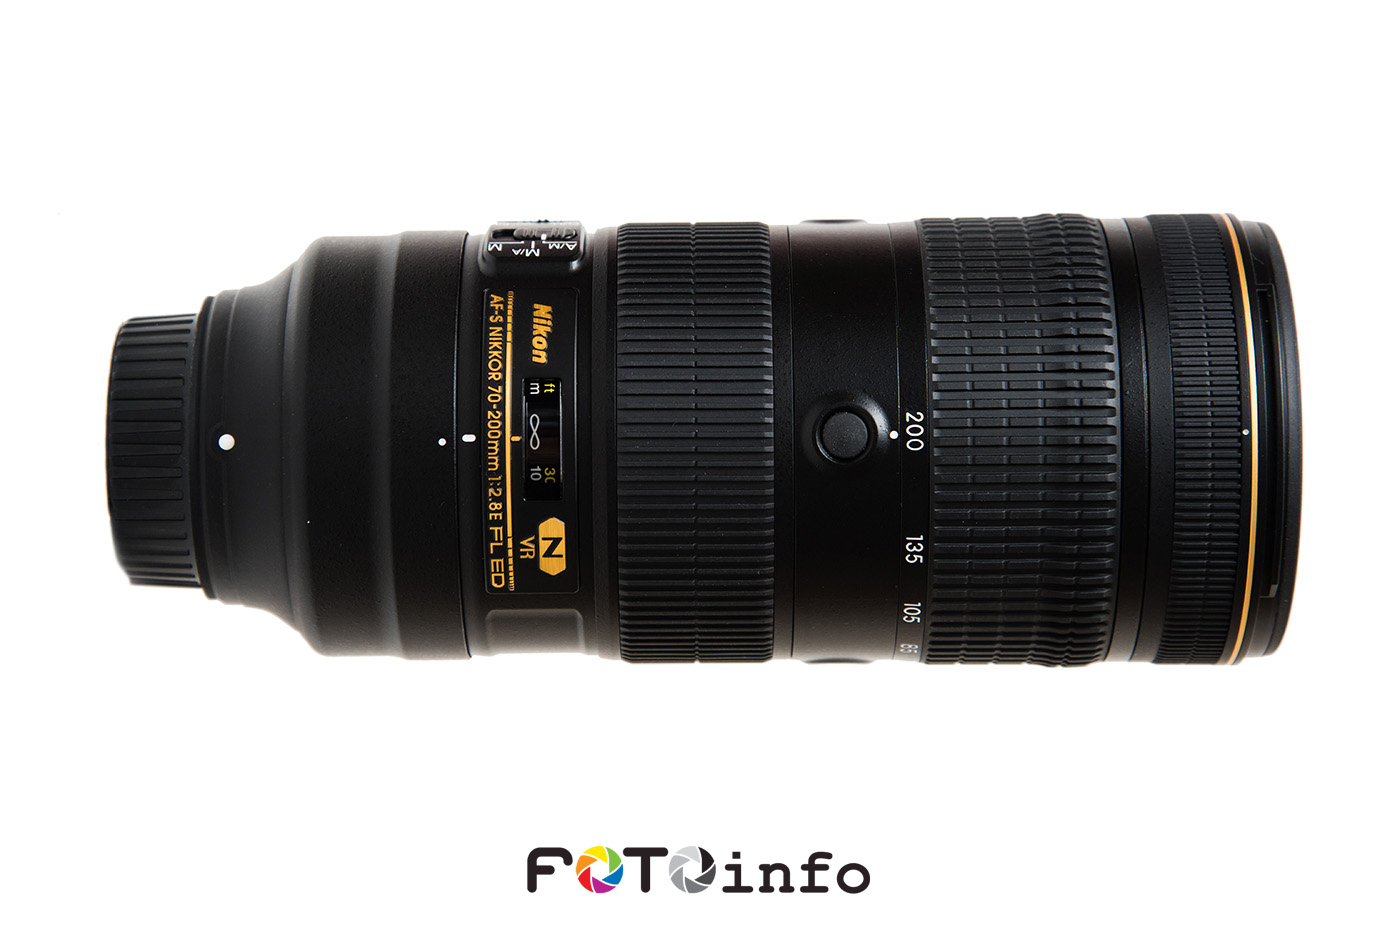 Nikon AF-S Nikkor 70-200mm f/2.8E FL ED VR lens review - Nikon Rumors